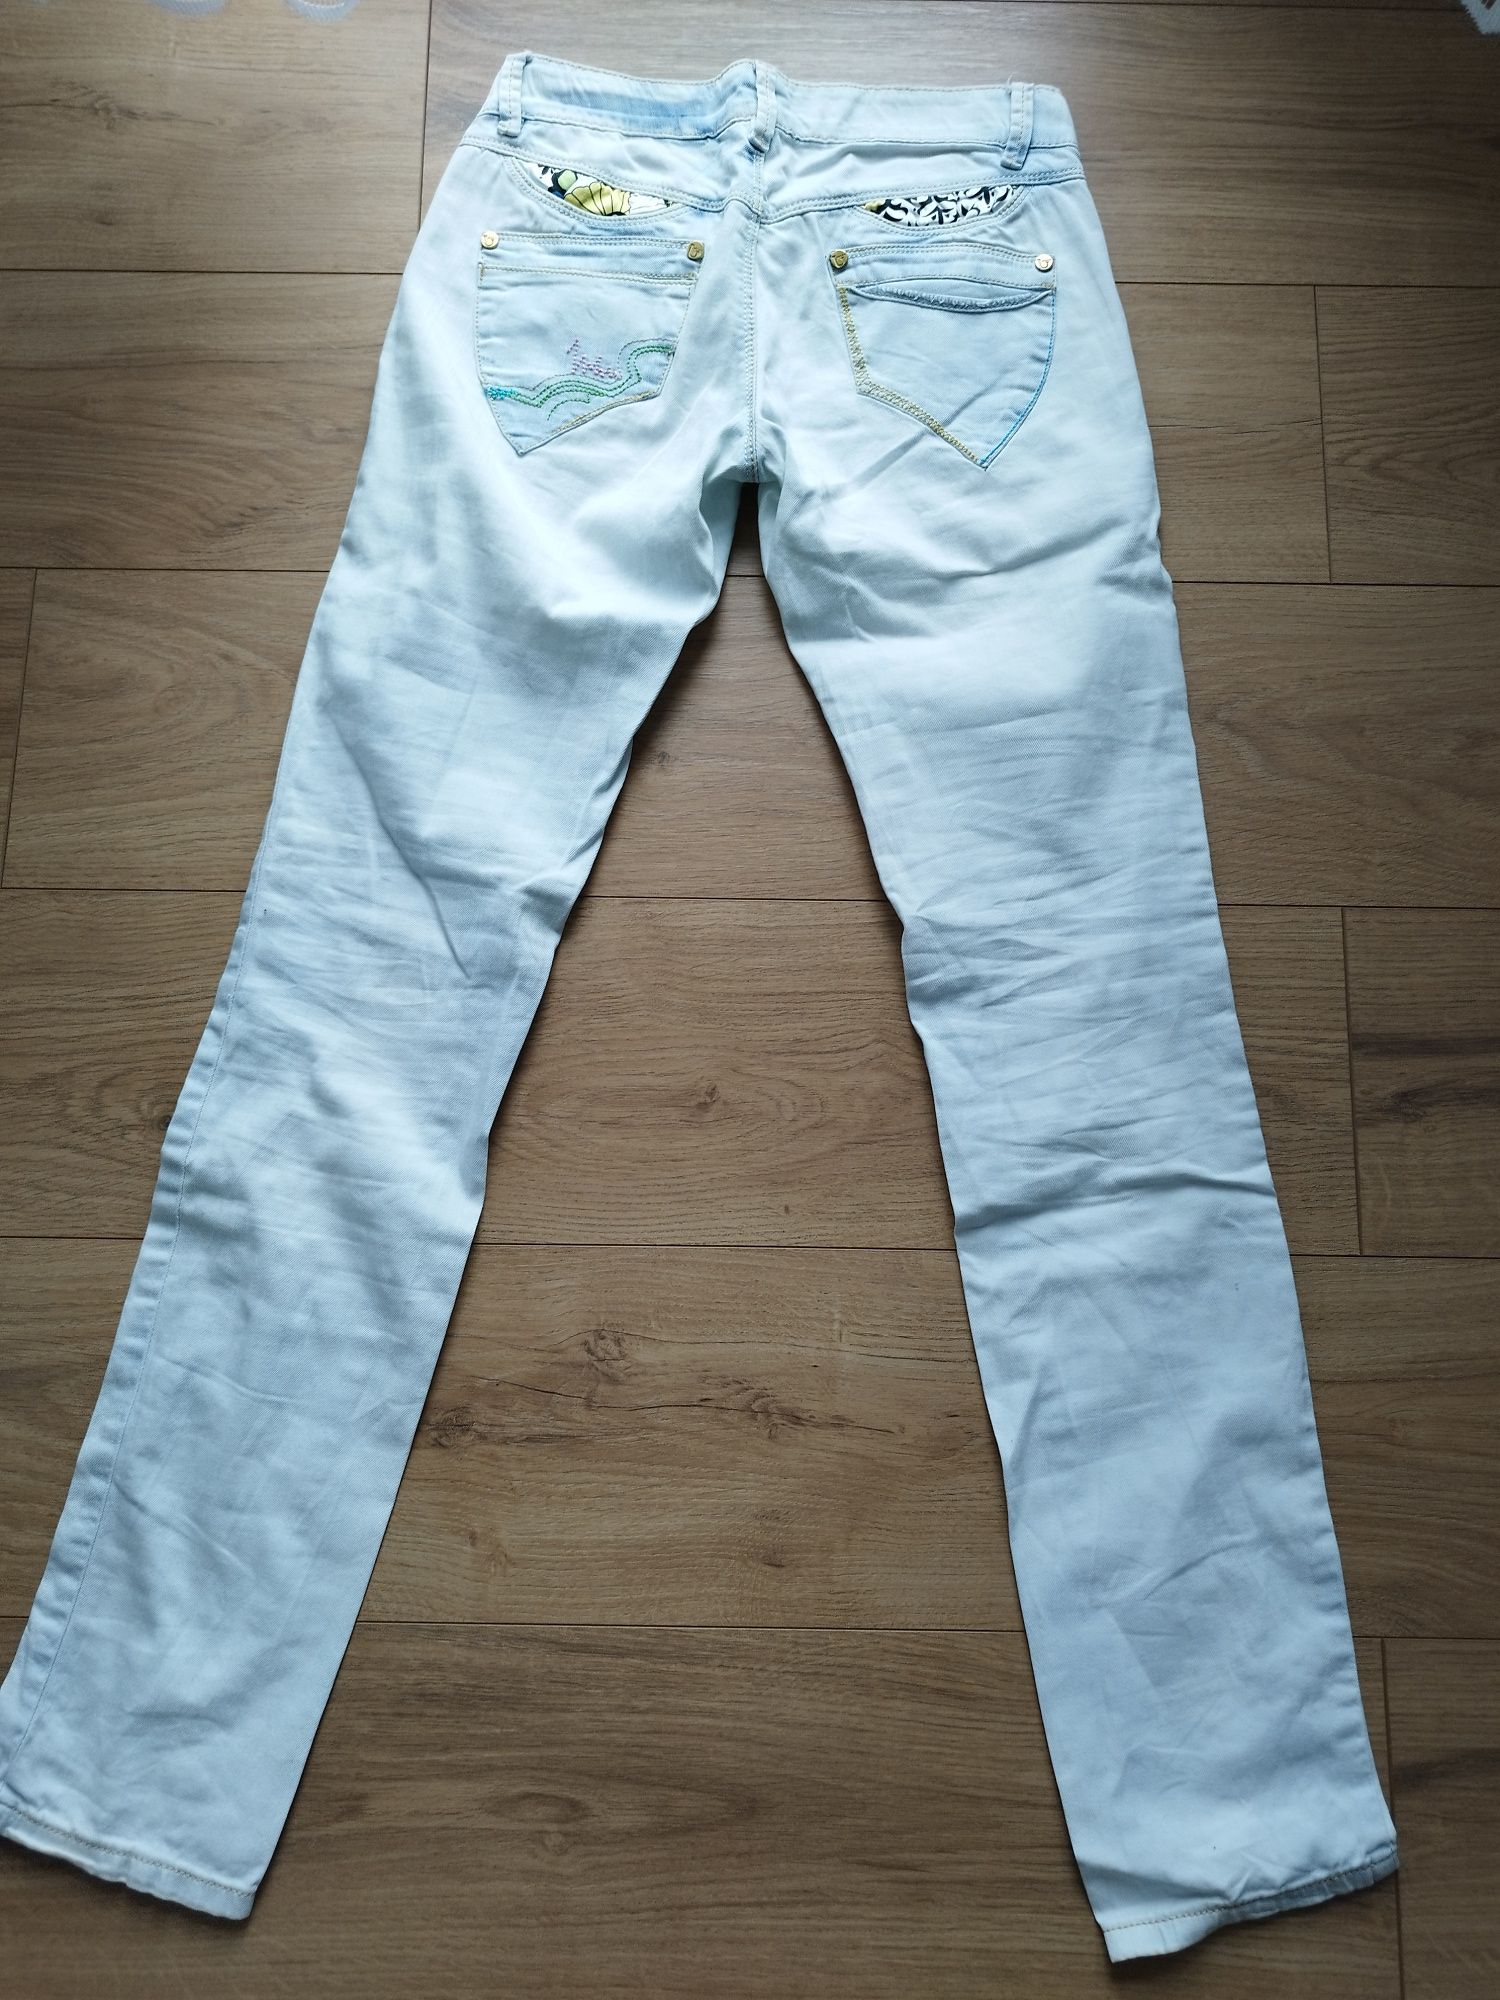 Spodnie jeansowe jasne